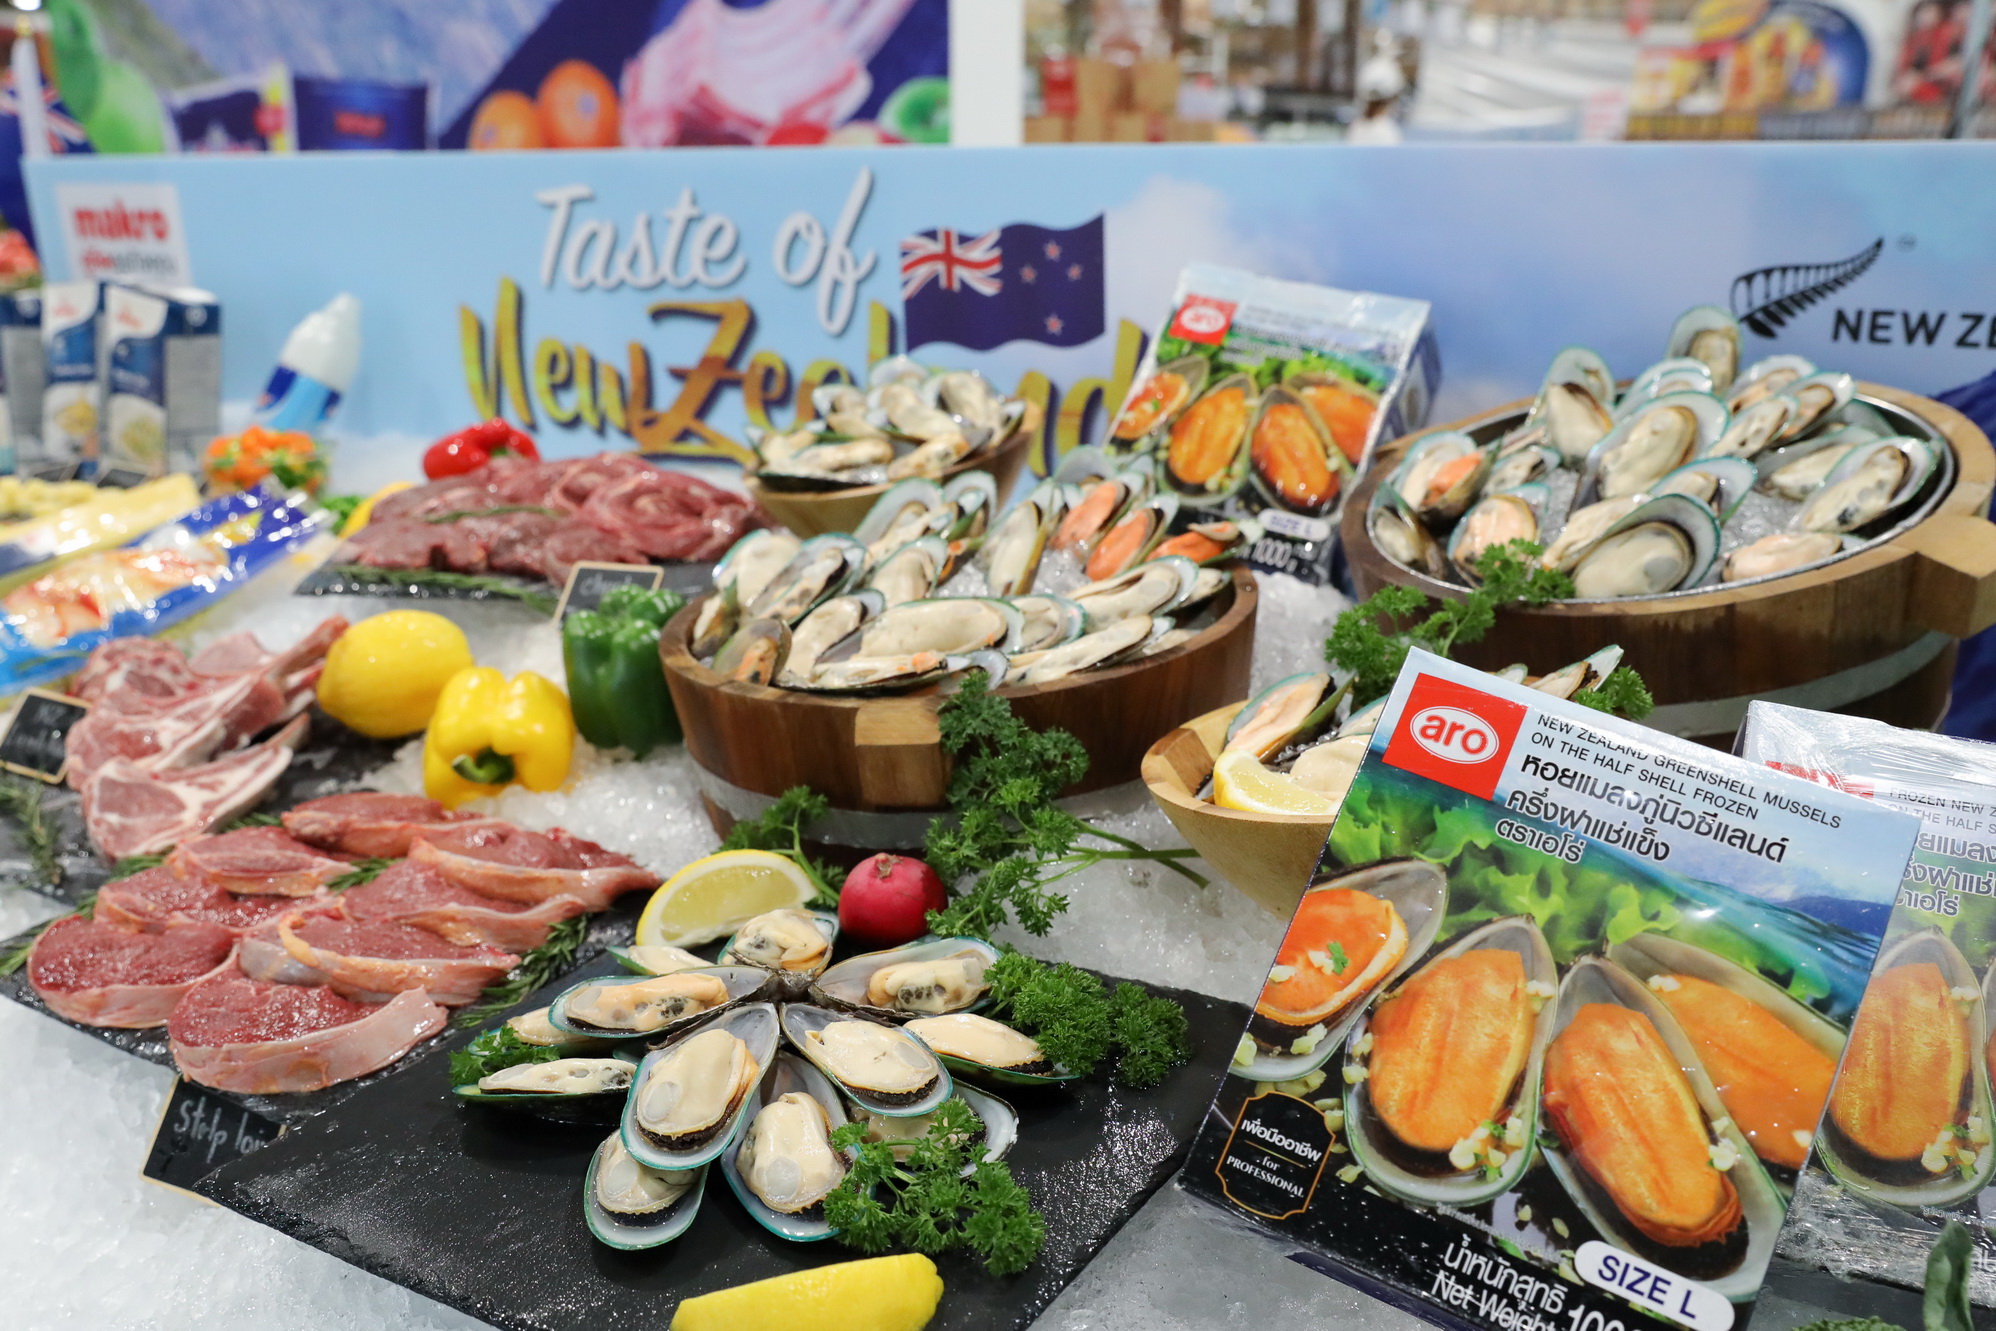 แม็คโคร จัดเทศกาล Taste of New Zealand ขนวัตถุดิบชั้นเยี่ยมจัดโปรฯแรง เอาใจนักชิม ผู้ประกอบการร้านอาหาร รับมาตรการกระตุ้นเศรษฐกิจ ฟื้นท่องเที่ยว